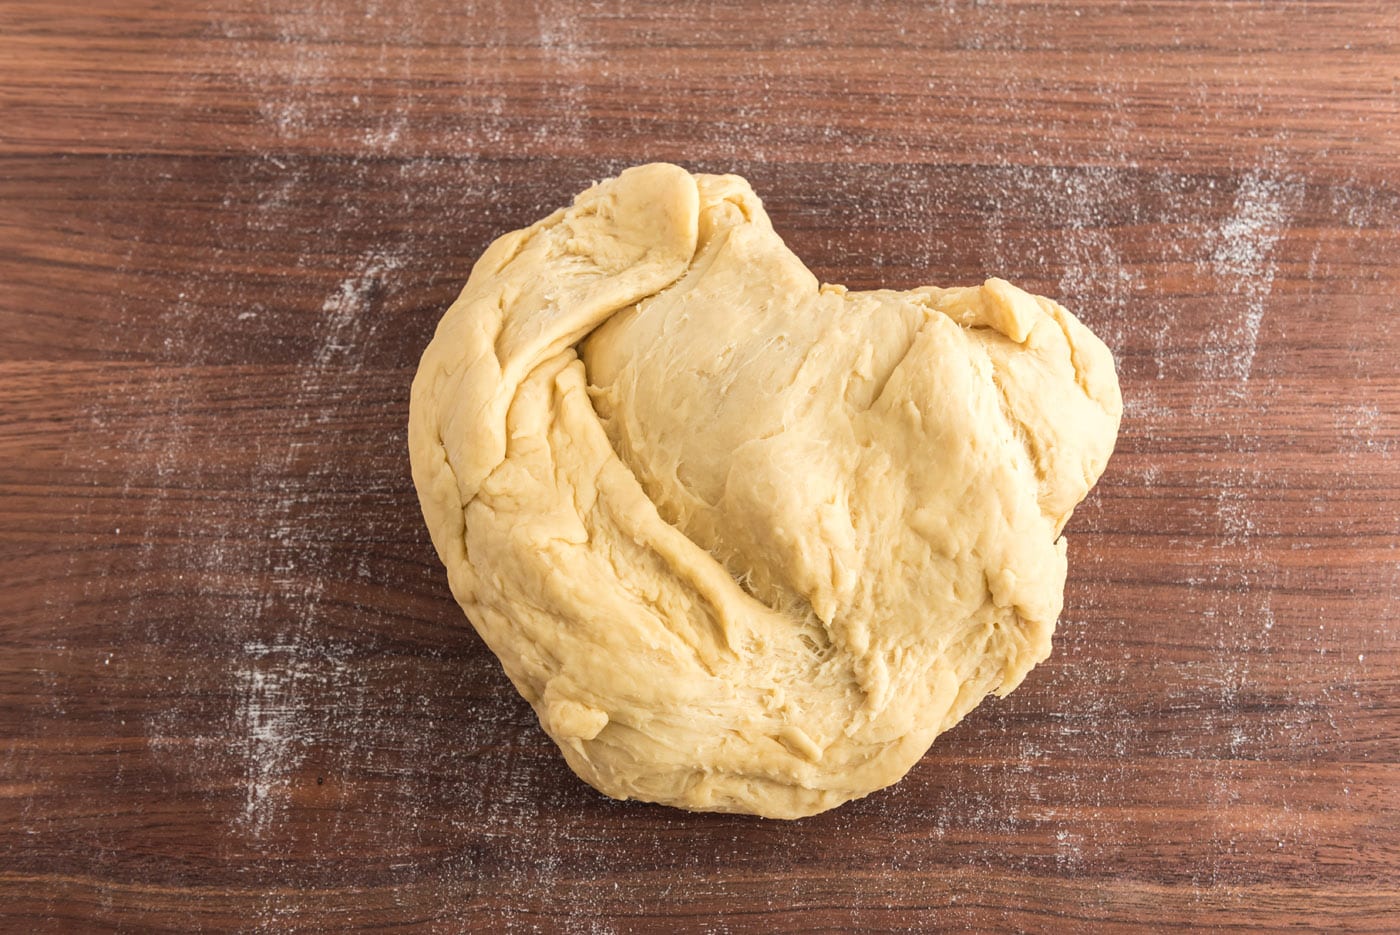 kneading yeast dough on cutting board